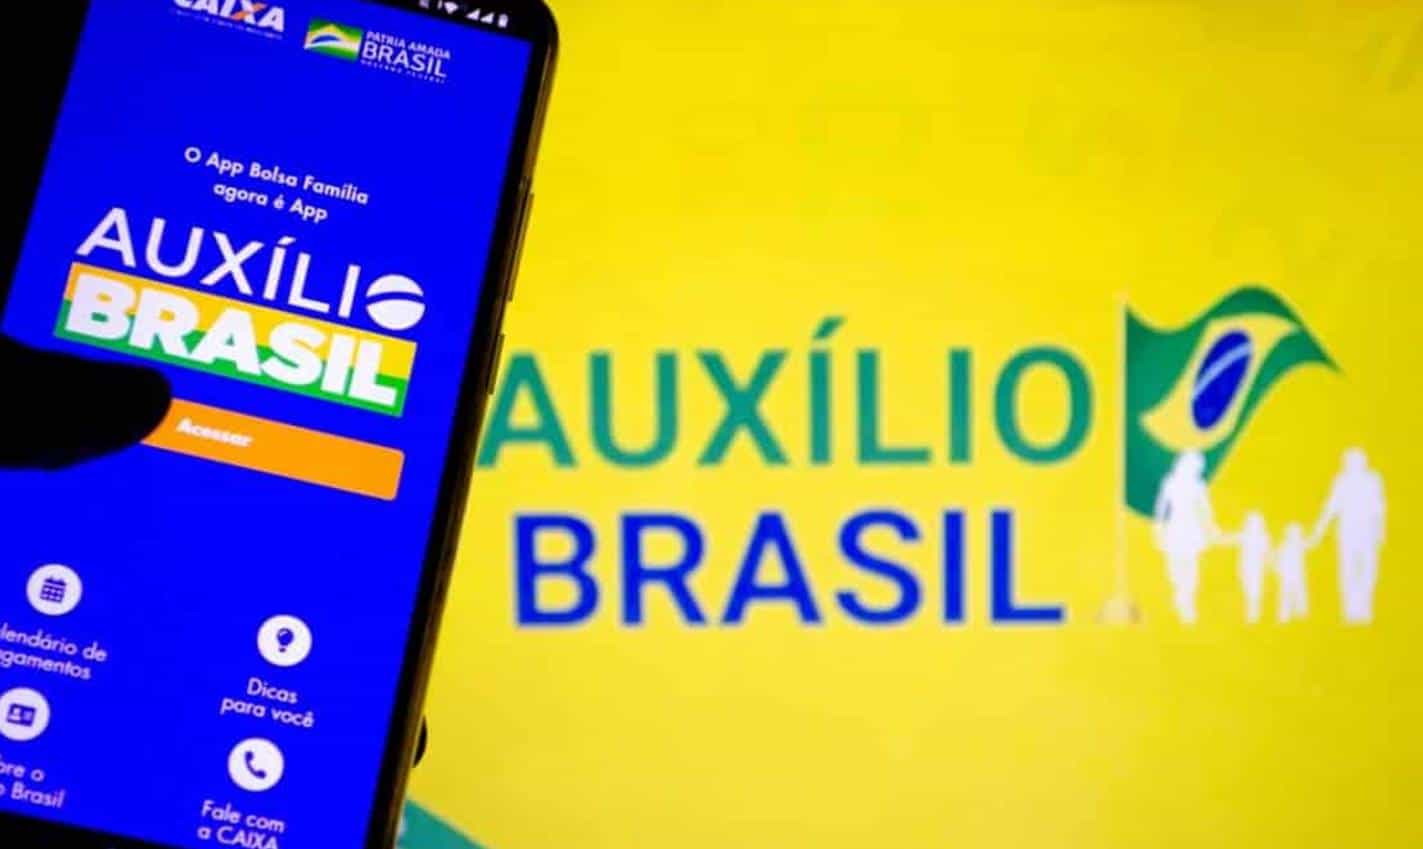 Atualização do Cadastro Único será necessária para receber Auxílio Brasil?